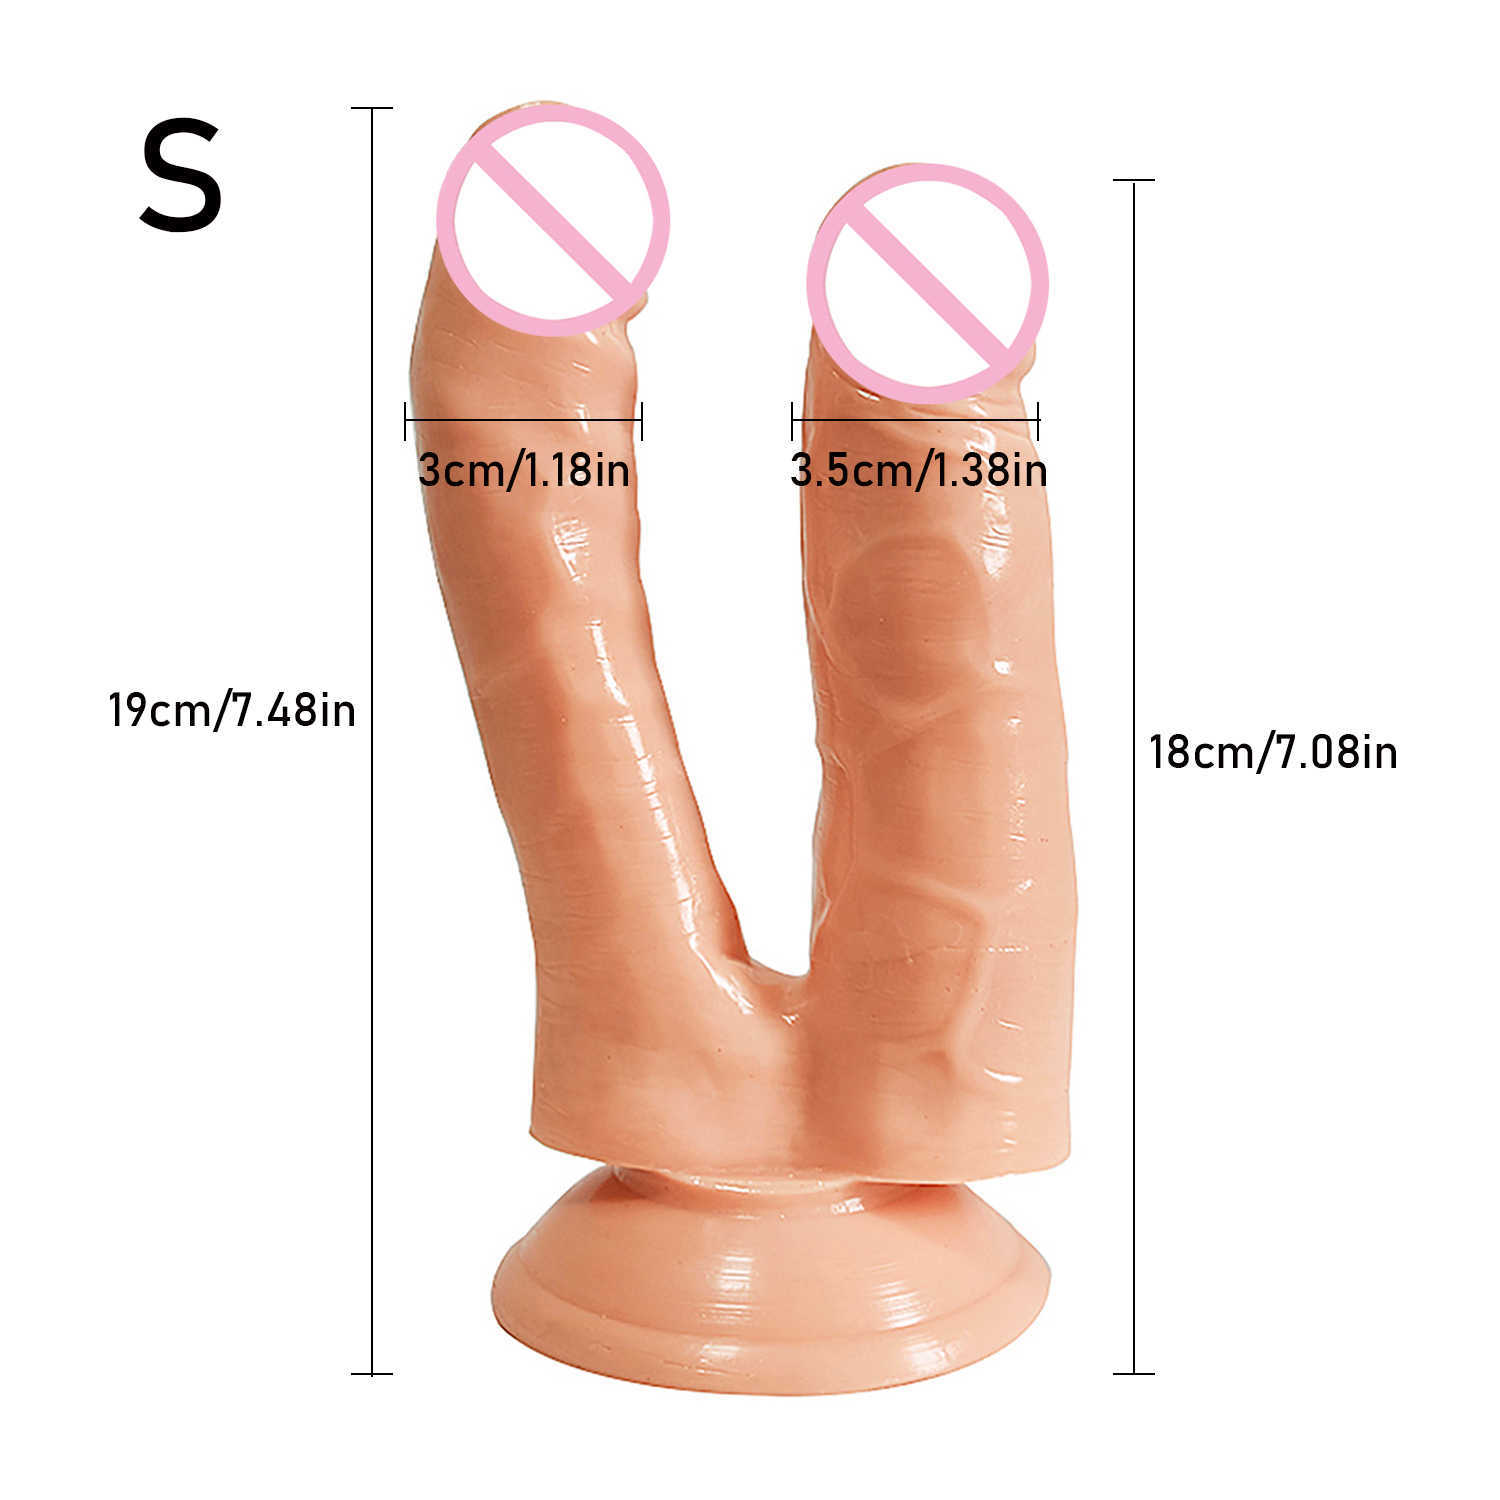 Schoonheid items enorme dubbele dildo's penetratie vagina en anus zachte huid gevoel penis hoofd phallus sexy speelgoed voor vrouwen masturbatie